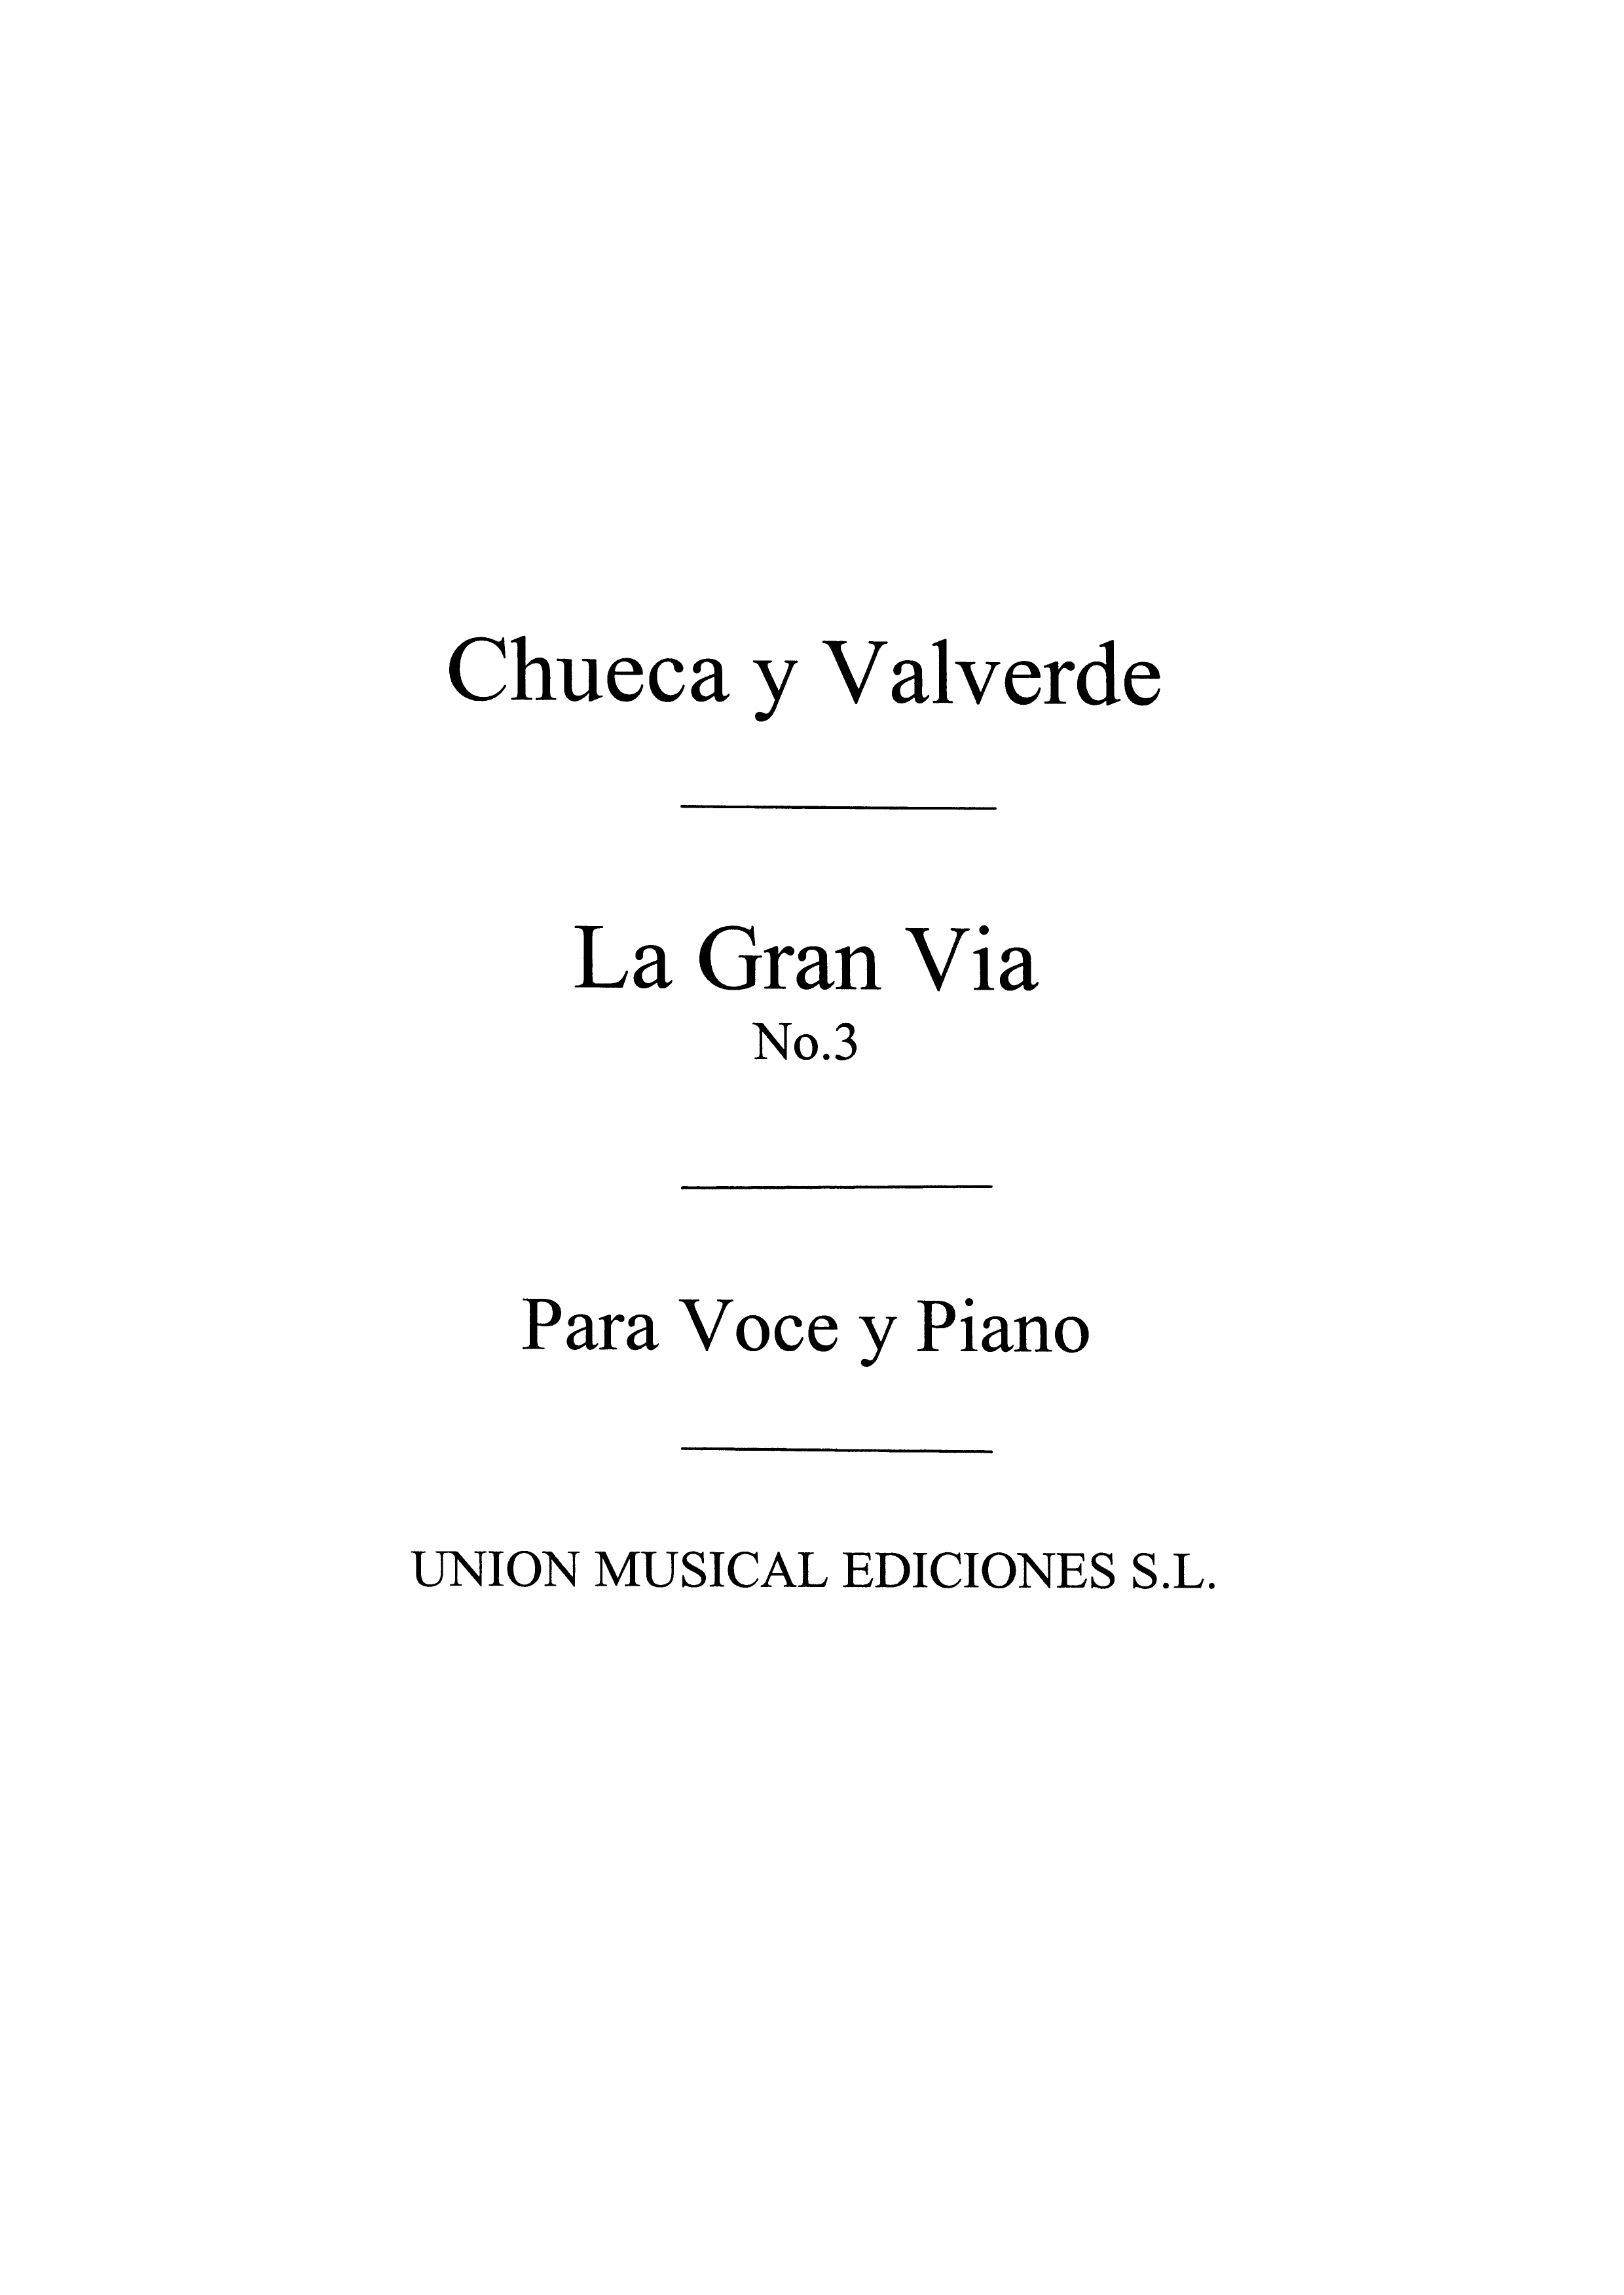 Joaquin Valverde: La Gran Via No. 3 Tango De La Menegilda: Voice: Mixed Songbook